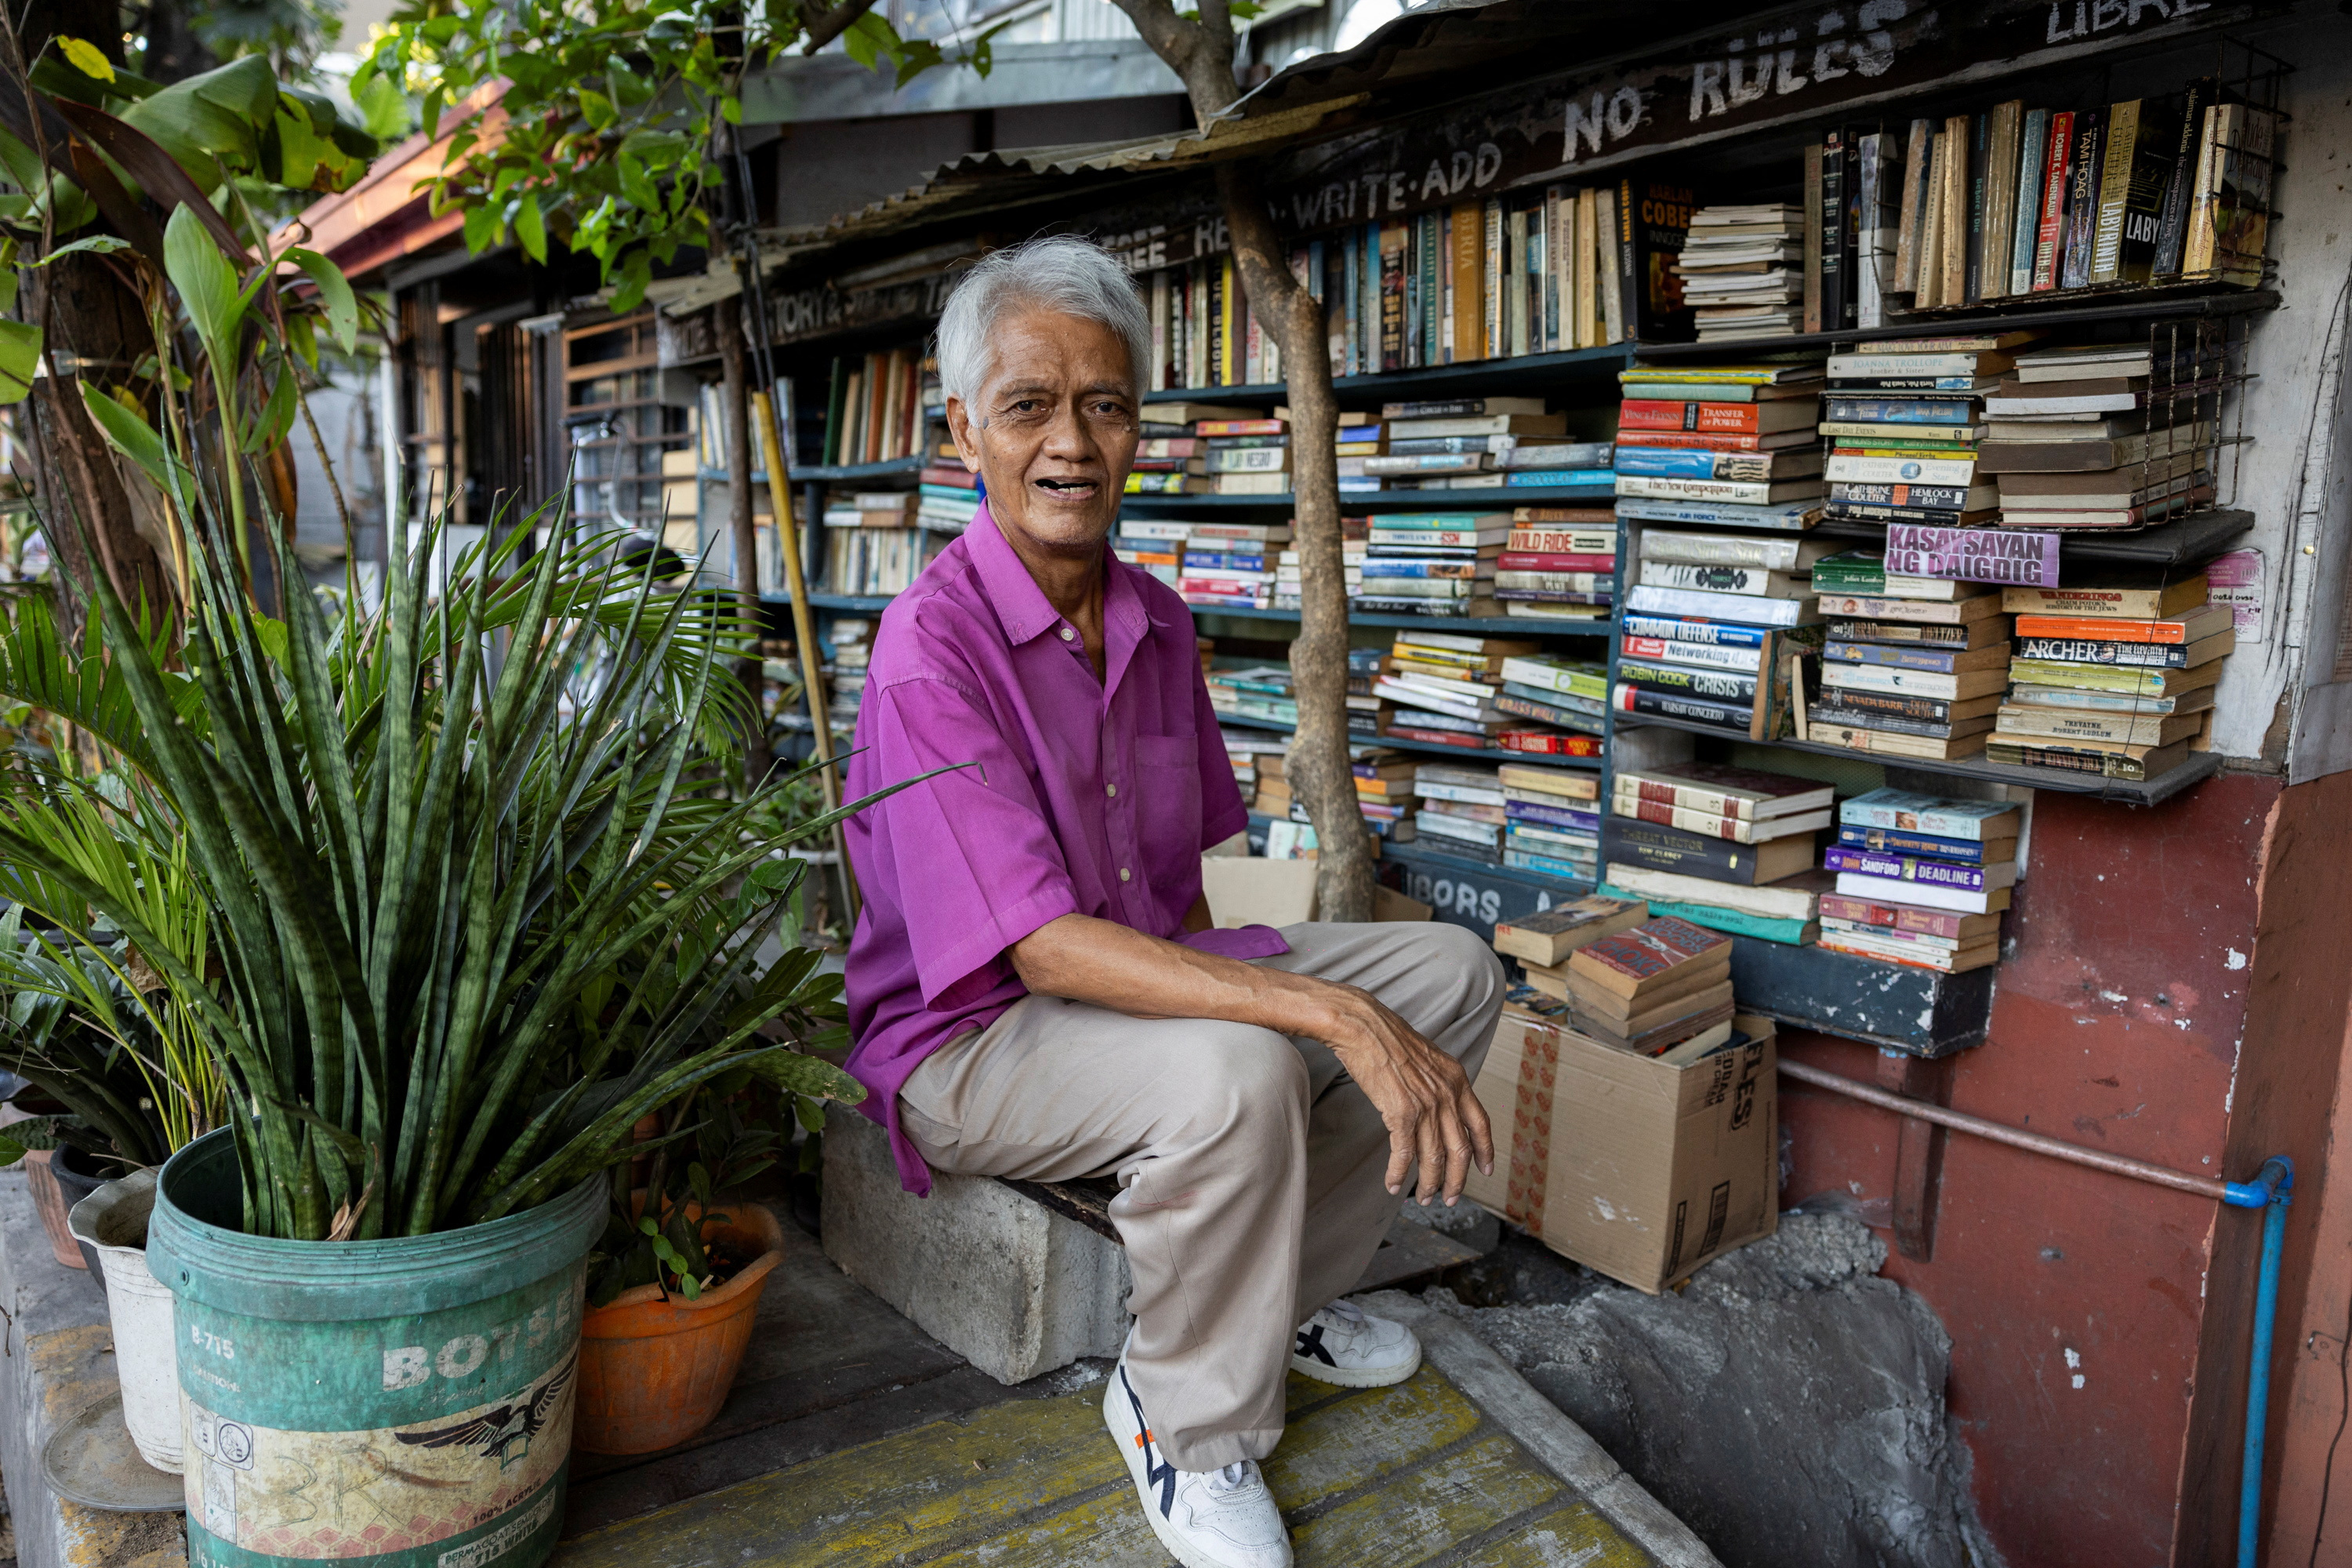 Filipino book lover transforms home into a public library